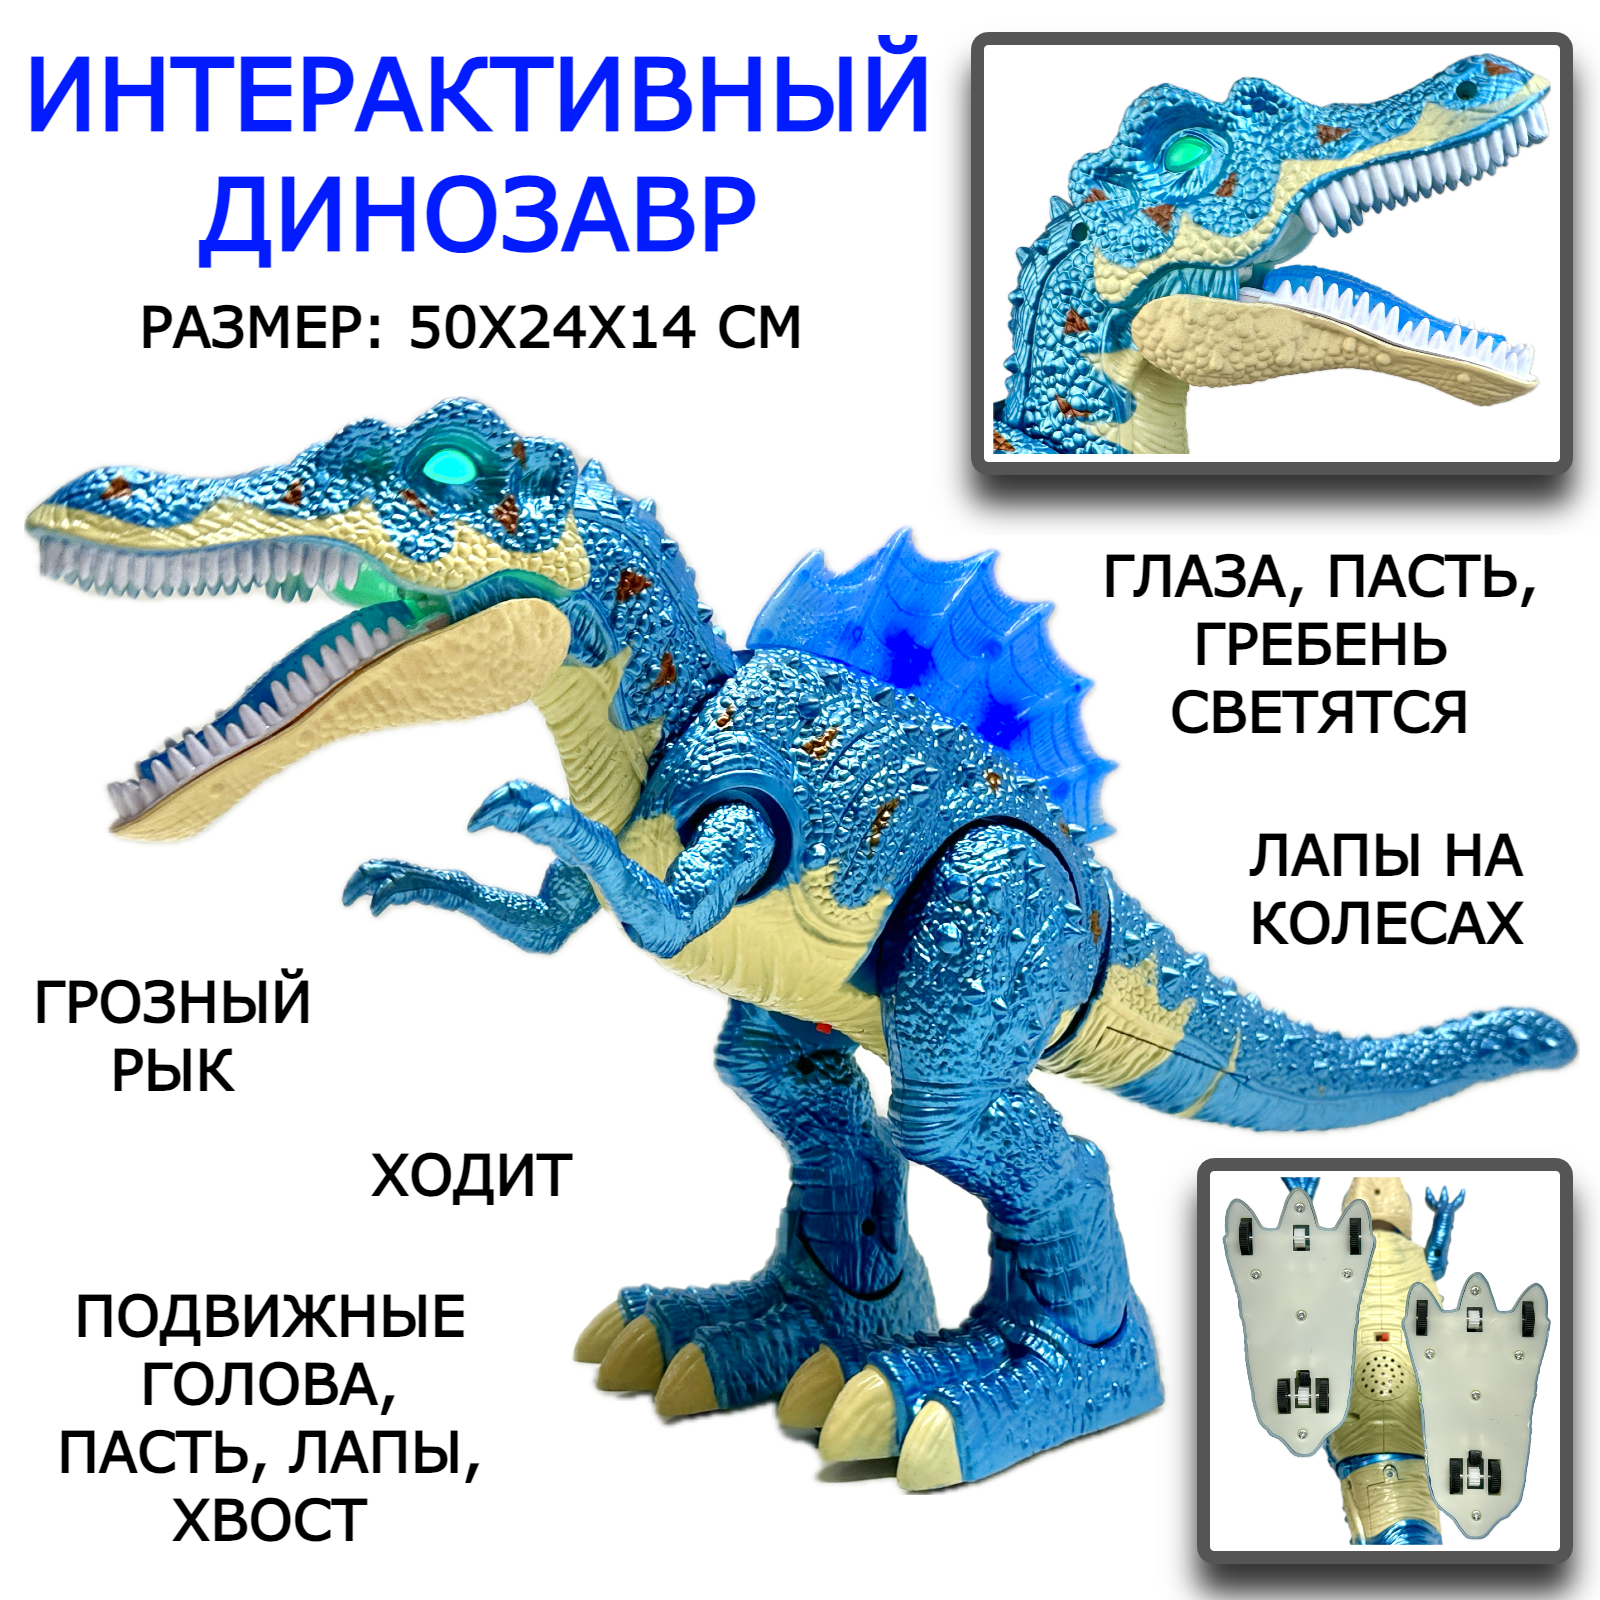 Интерактивная игрушка динозавр Тираннозавр Y333-01, Тирекс, ходит, рычит, подвижная голова, лапы, хвост, глаза и гребешок светятся, 50х24х14 см